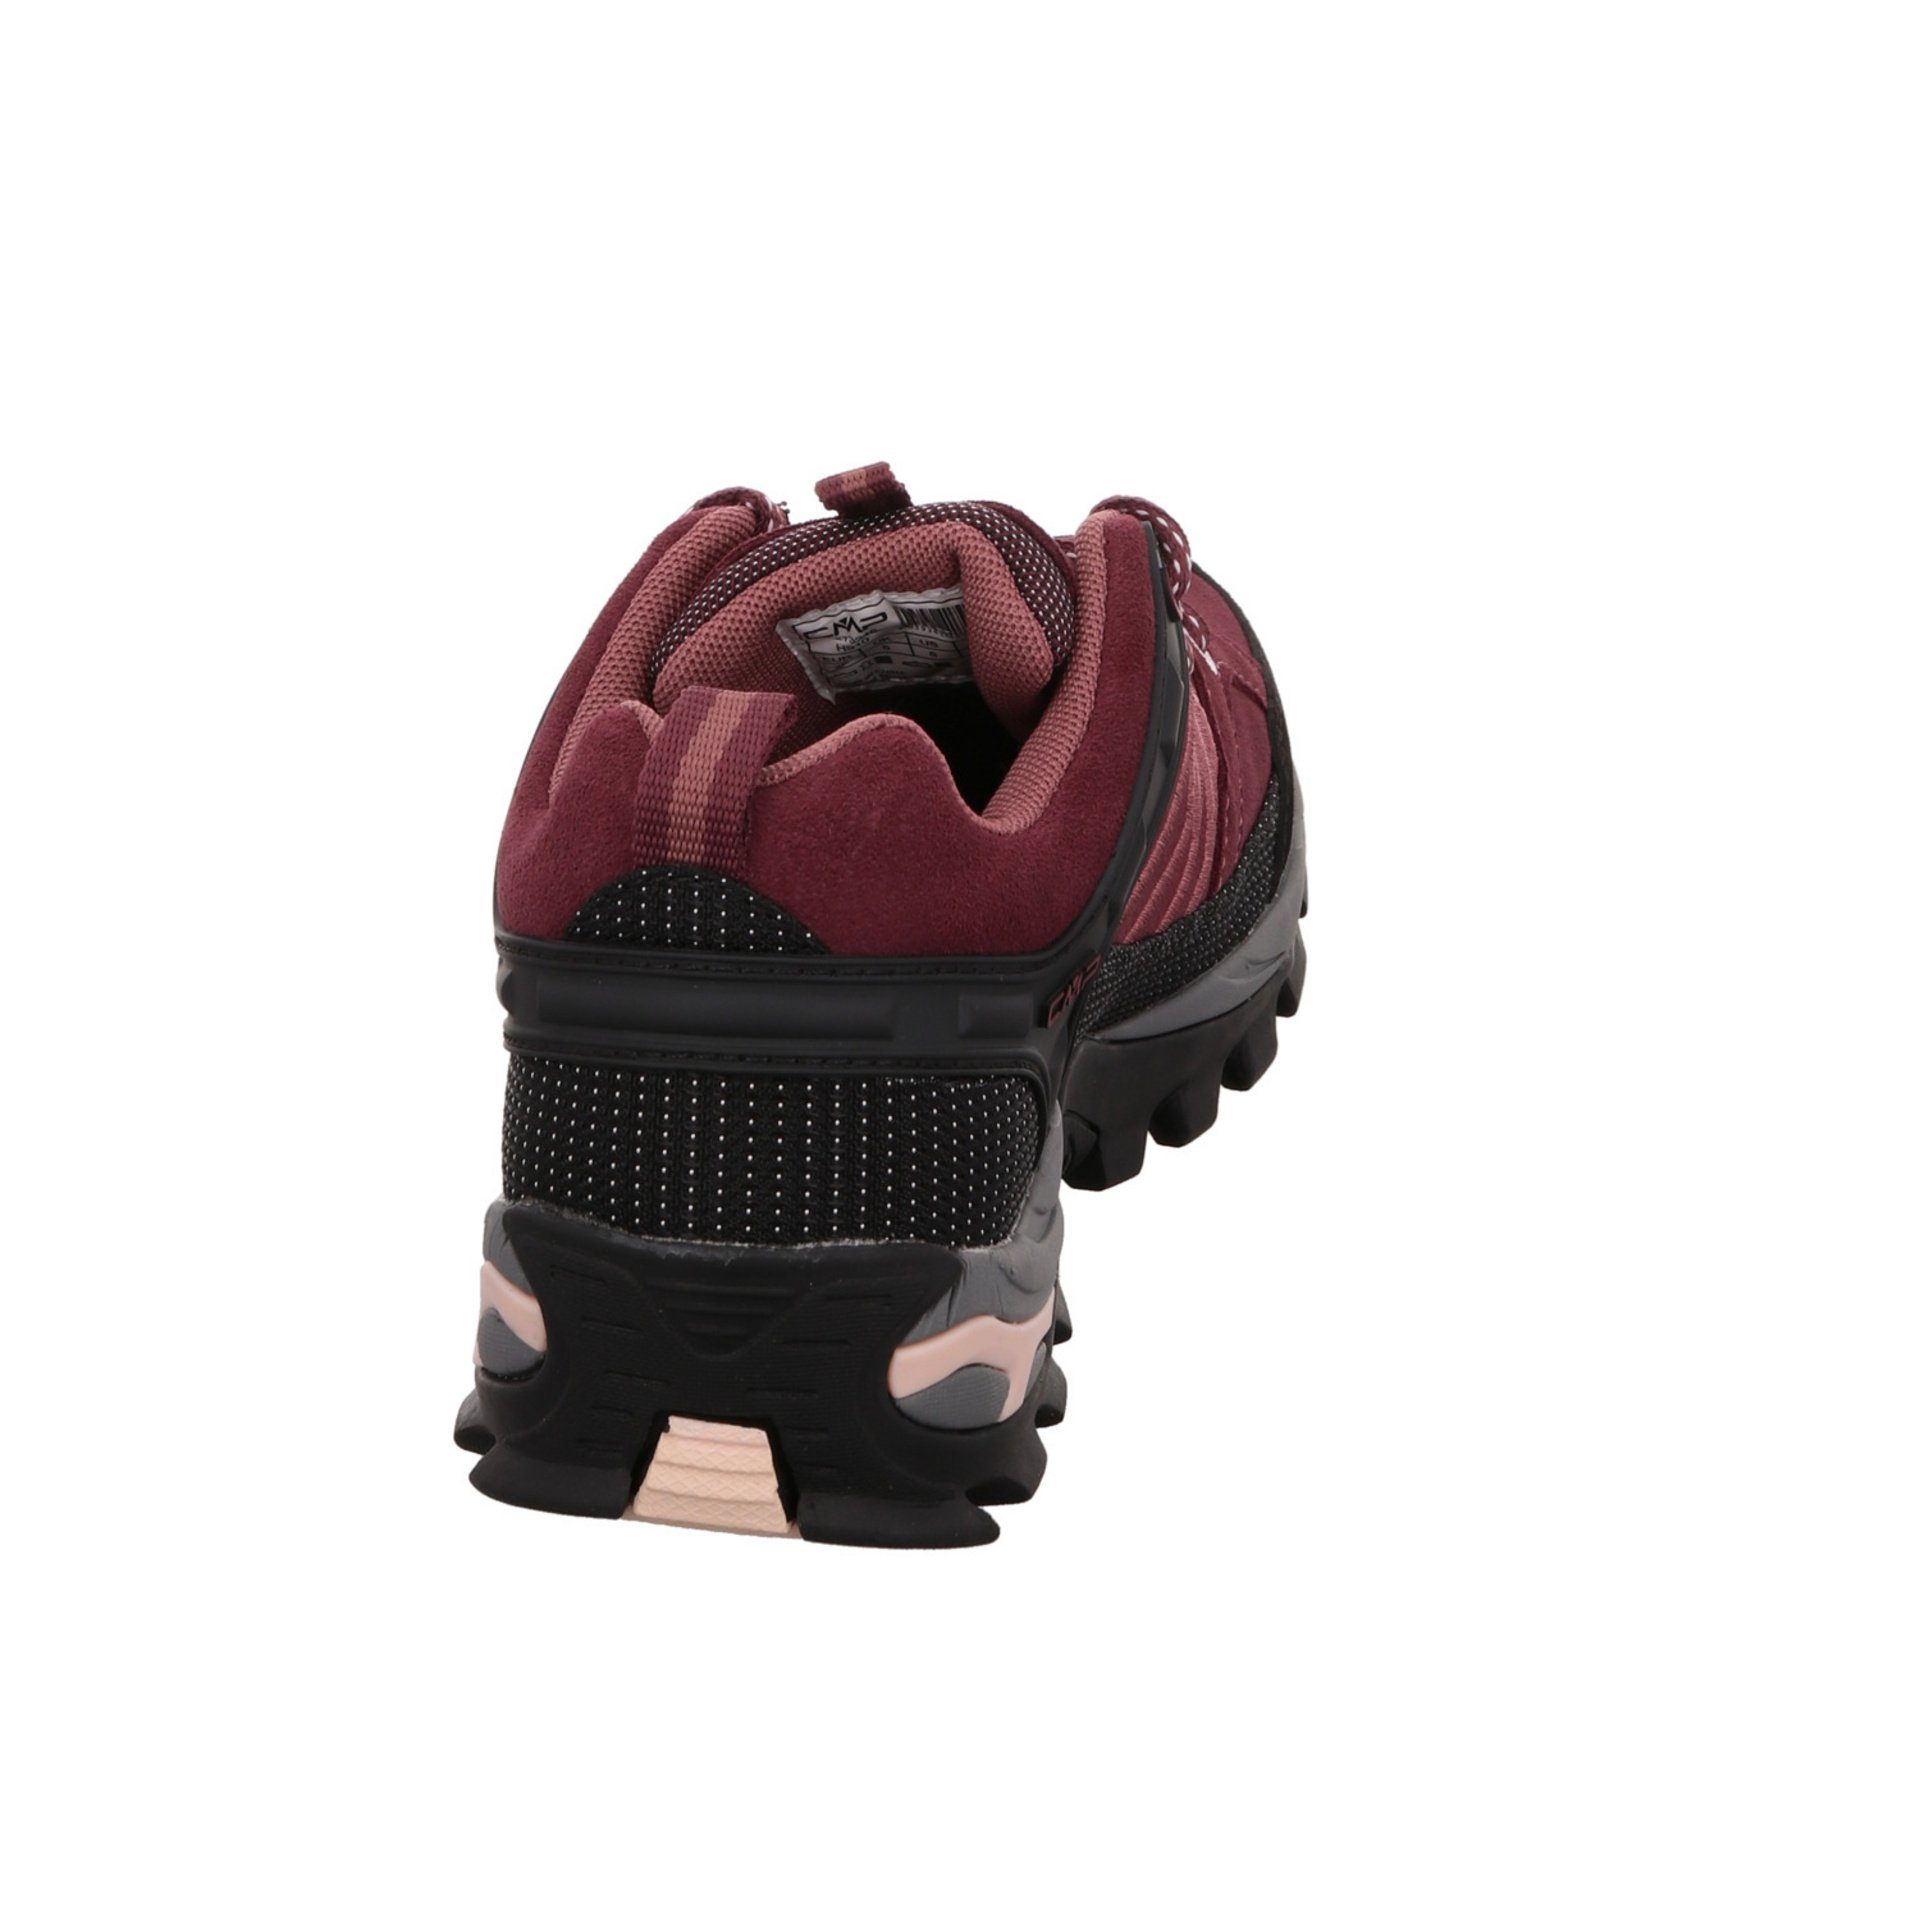 CMP Damen Schuhe Outdoor Low Outdoorschuh Leder-/Textilkombination PRUGNA Rigel Outdoorschuh